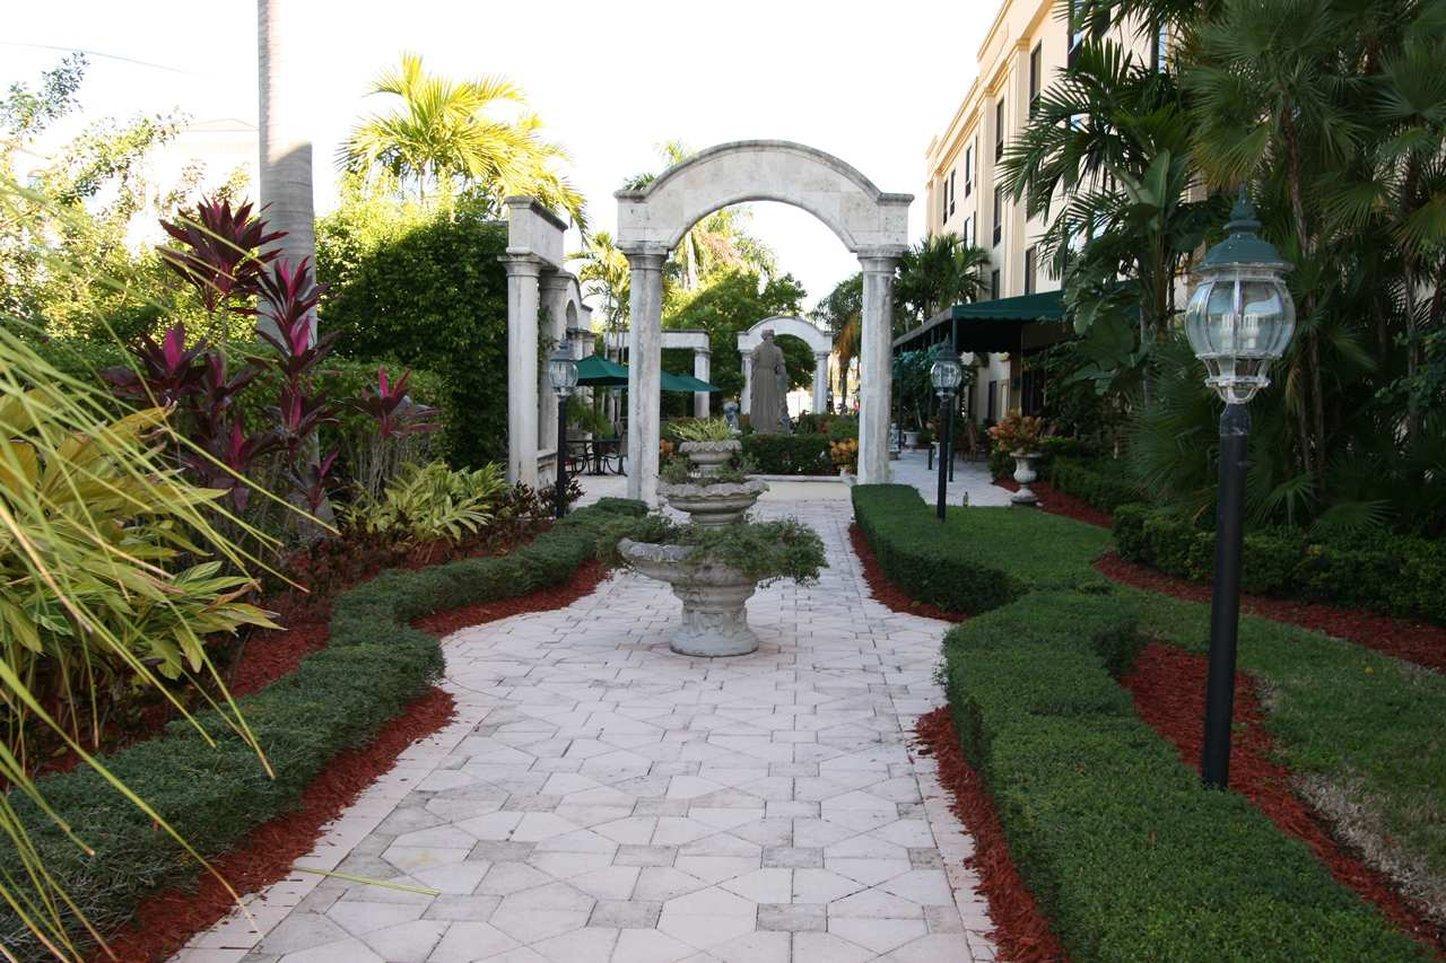 Hampton Inn Palm Beach Gardens, Palm Beach Gardens – Updated 2023 Prices